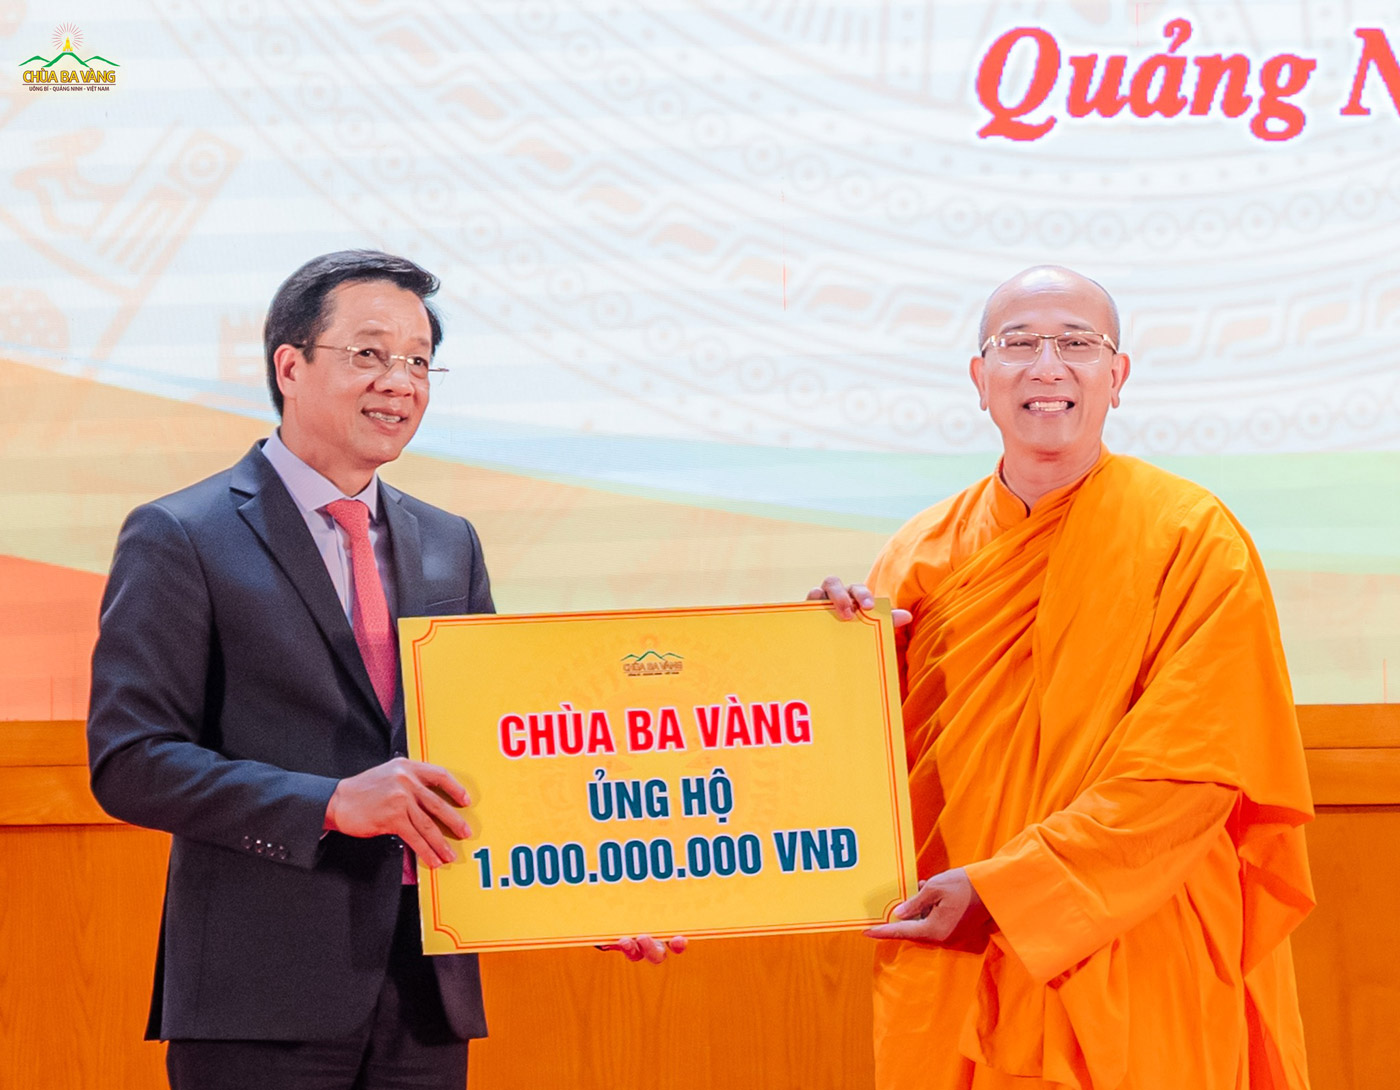 Chùa Ba Vàng ủng hộ một tỷ đồng chung tay, góp sức làm nhà Đại đoàn kết cho hộ nghèo tỉnh Điện Biên và hỗ trợ các hộ nghèo, hộ cận nghèo trên địa bàn tỉnh Quảng Ninh